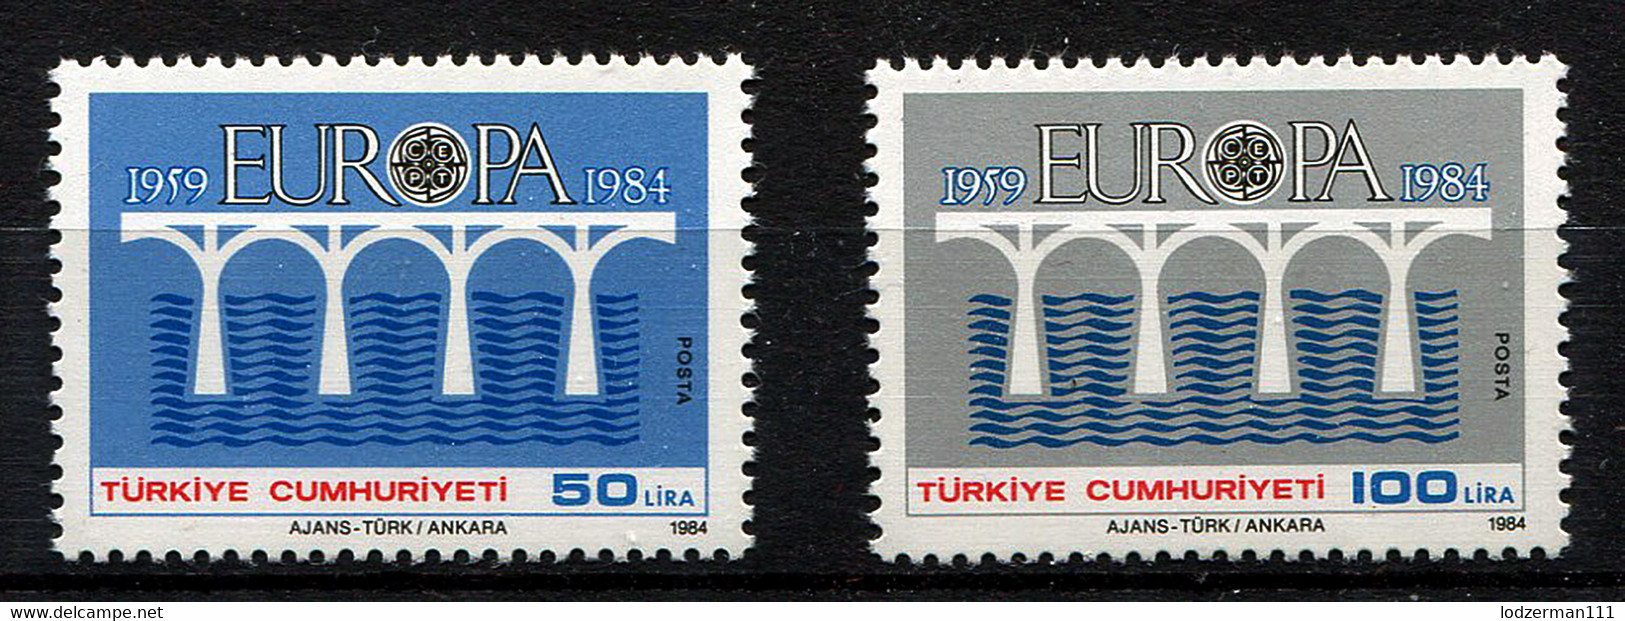 TURKEY - Europa CEPT 1984 MNH (postfrisch) VF - Nuovi